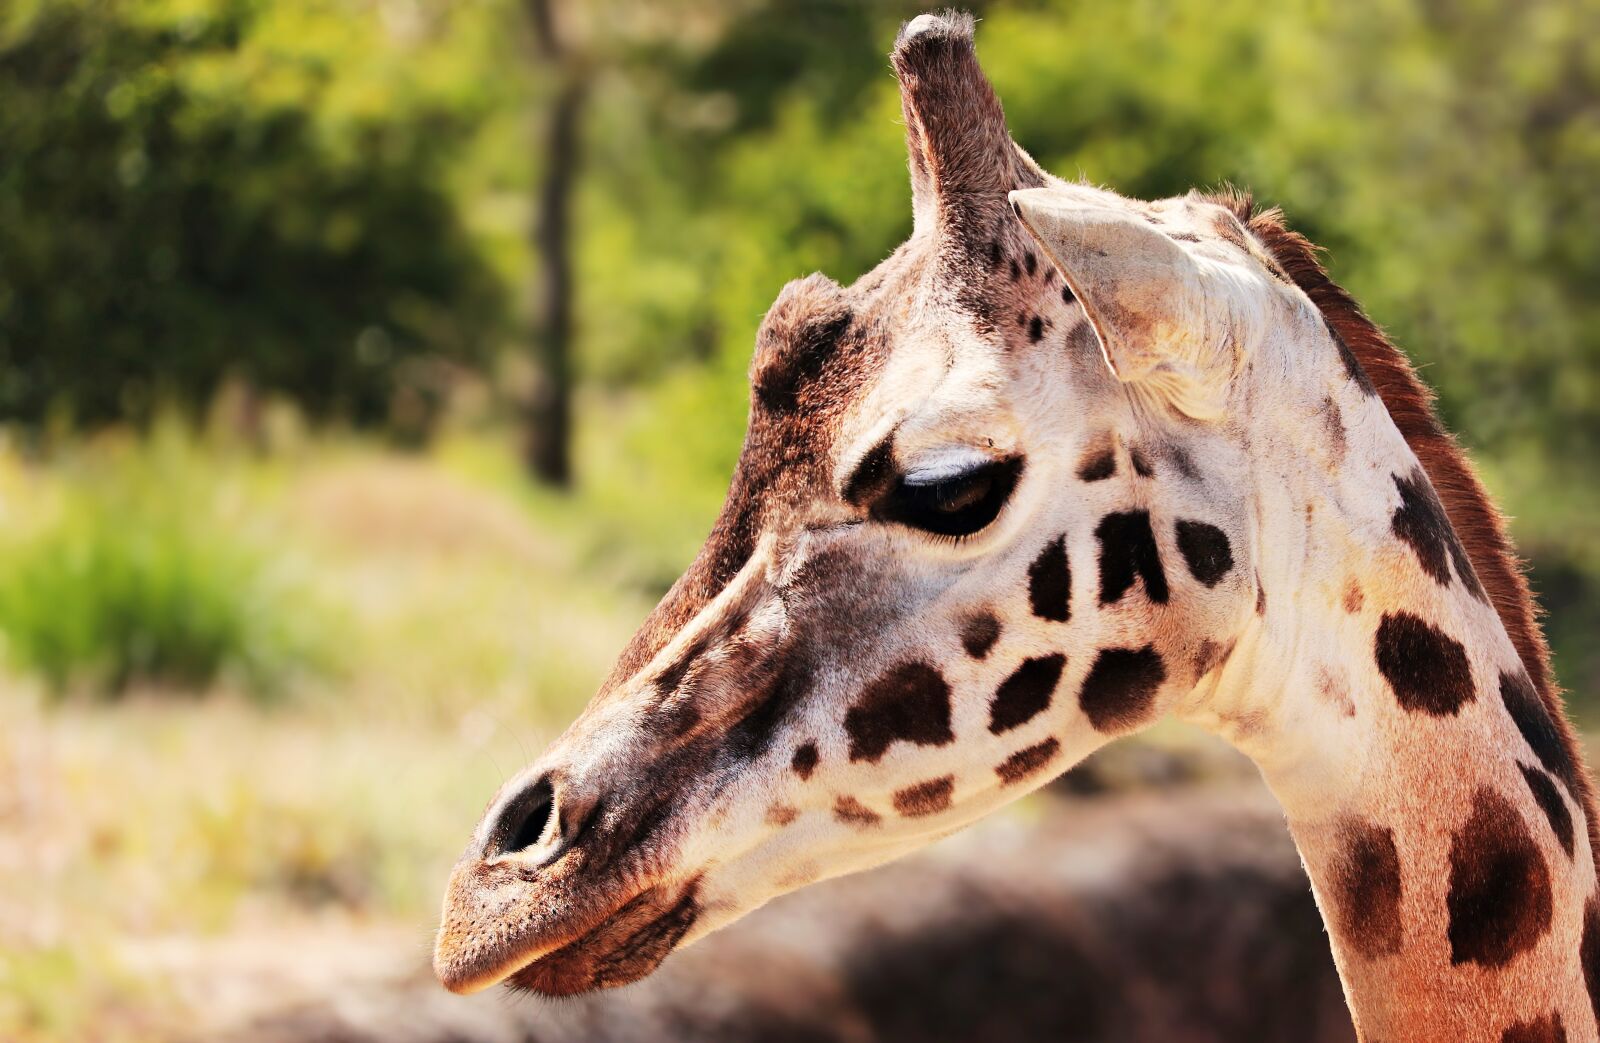 Canon EOS 80D sample photo. Giraffe, animal, mammal photography